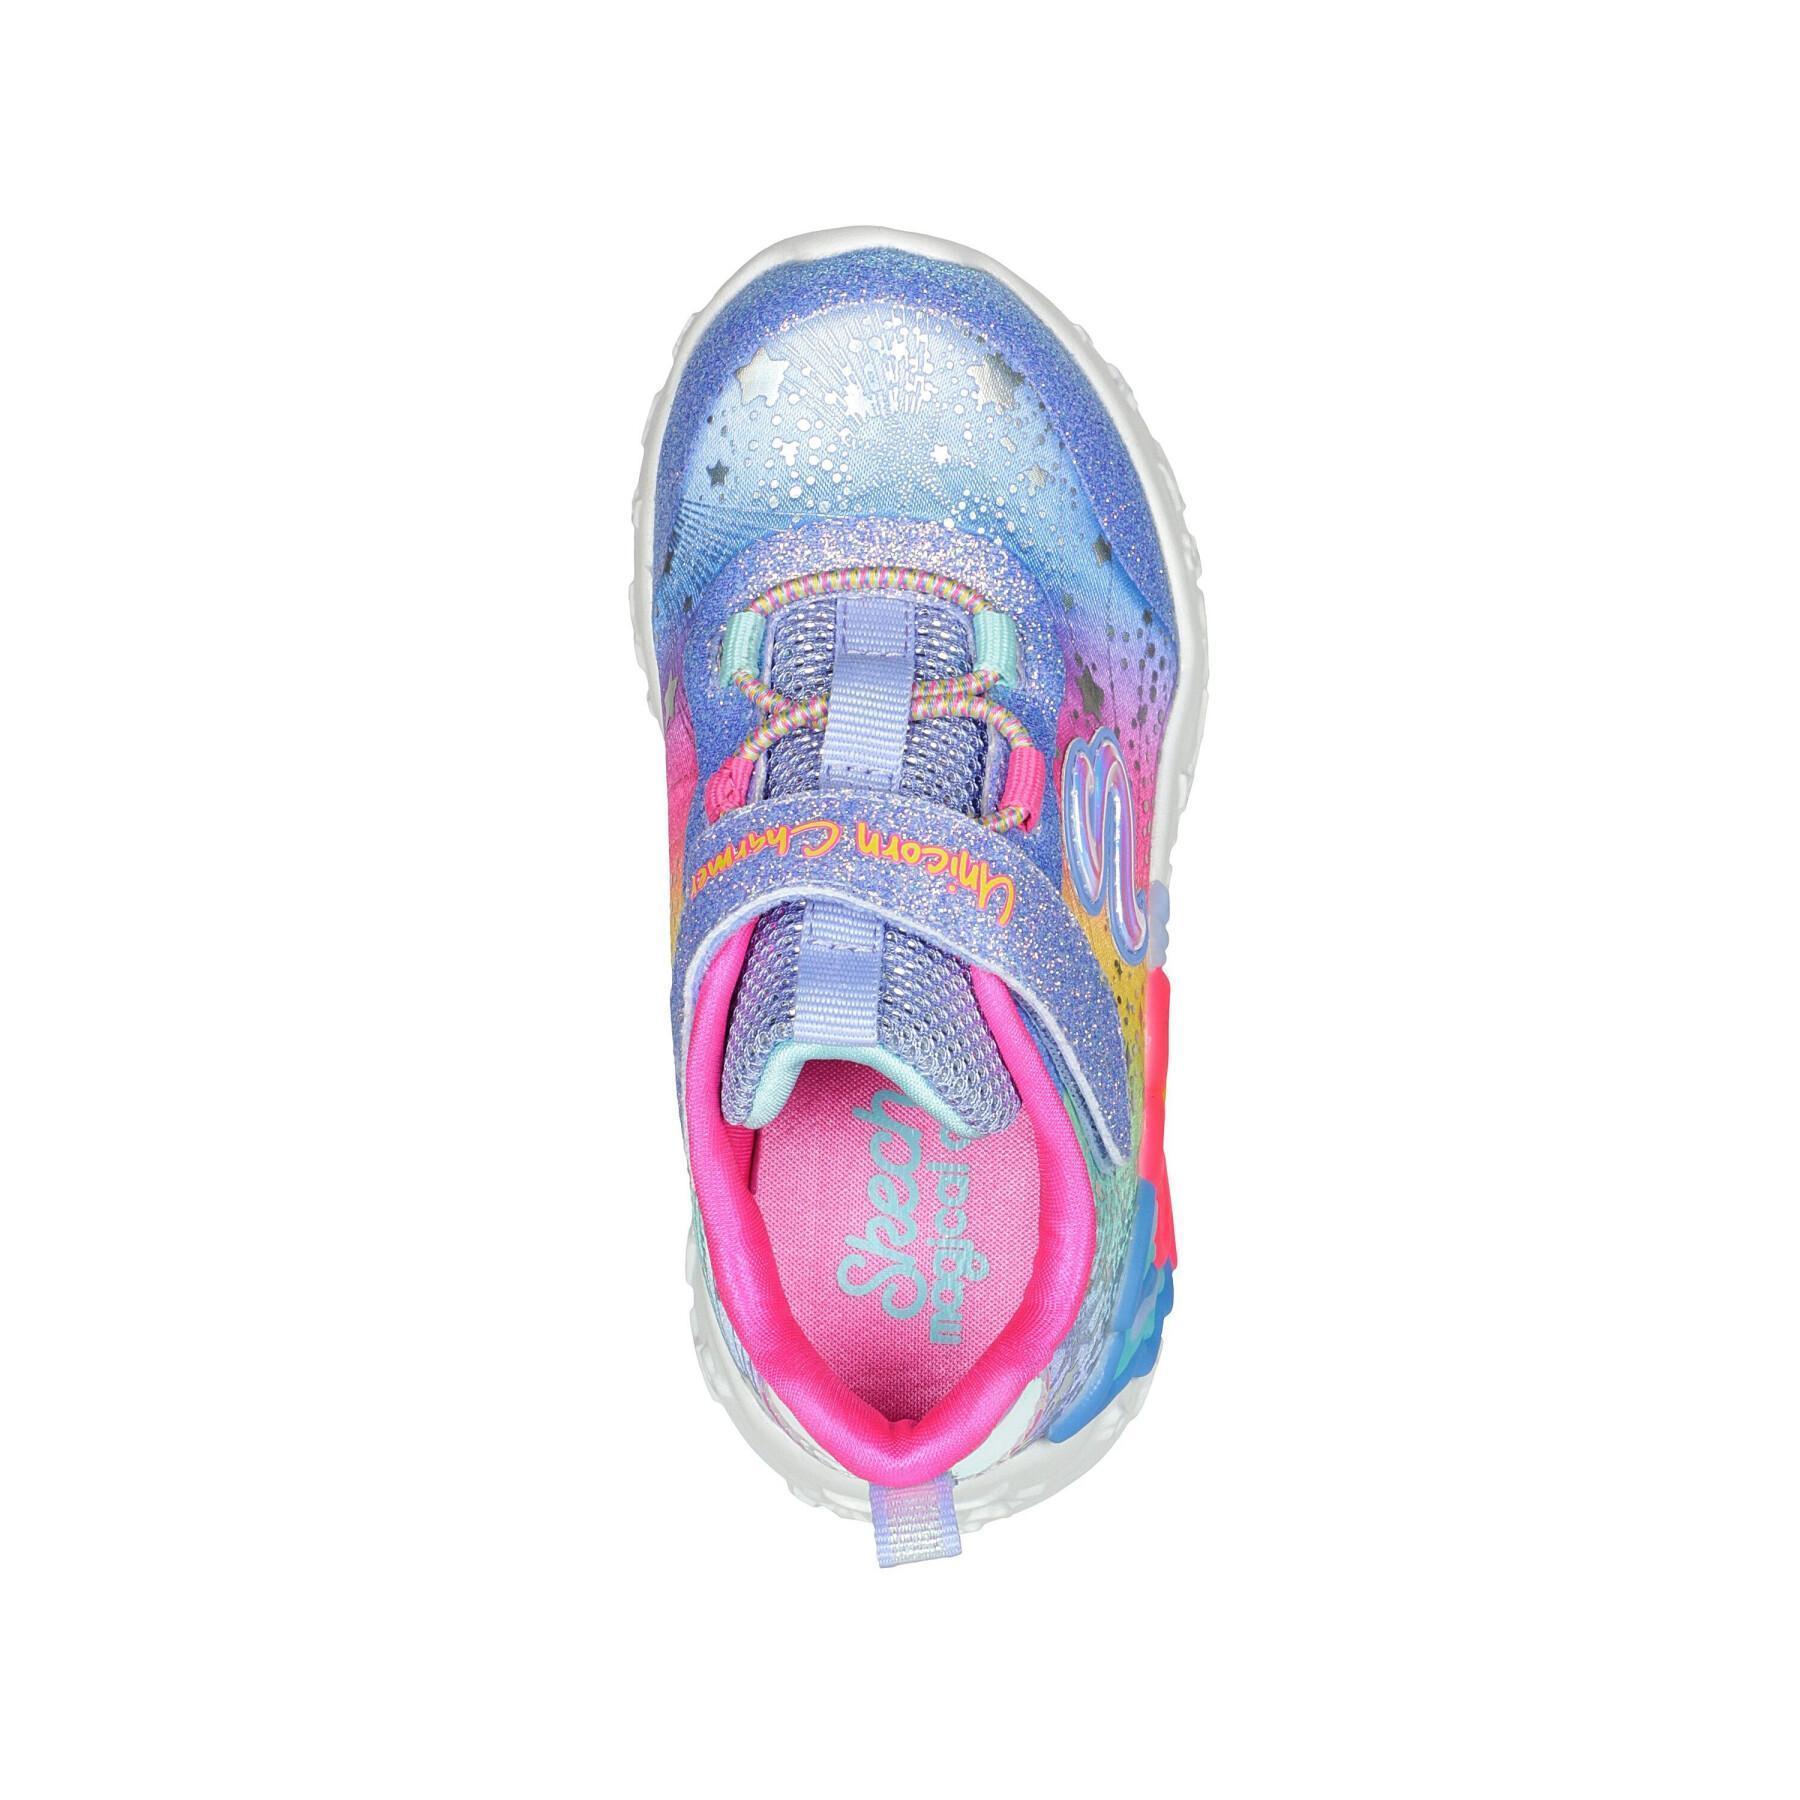 Baby girl sneaker Skechers Unicorn Charmer-Twilight Dream